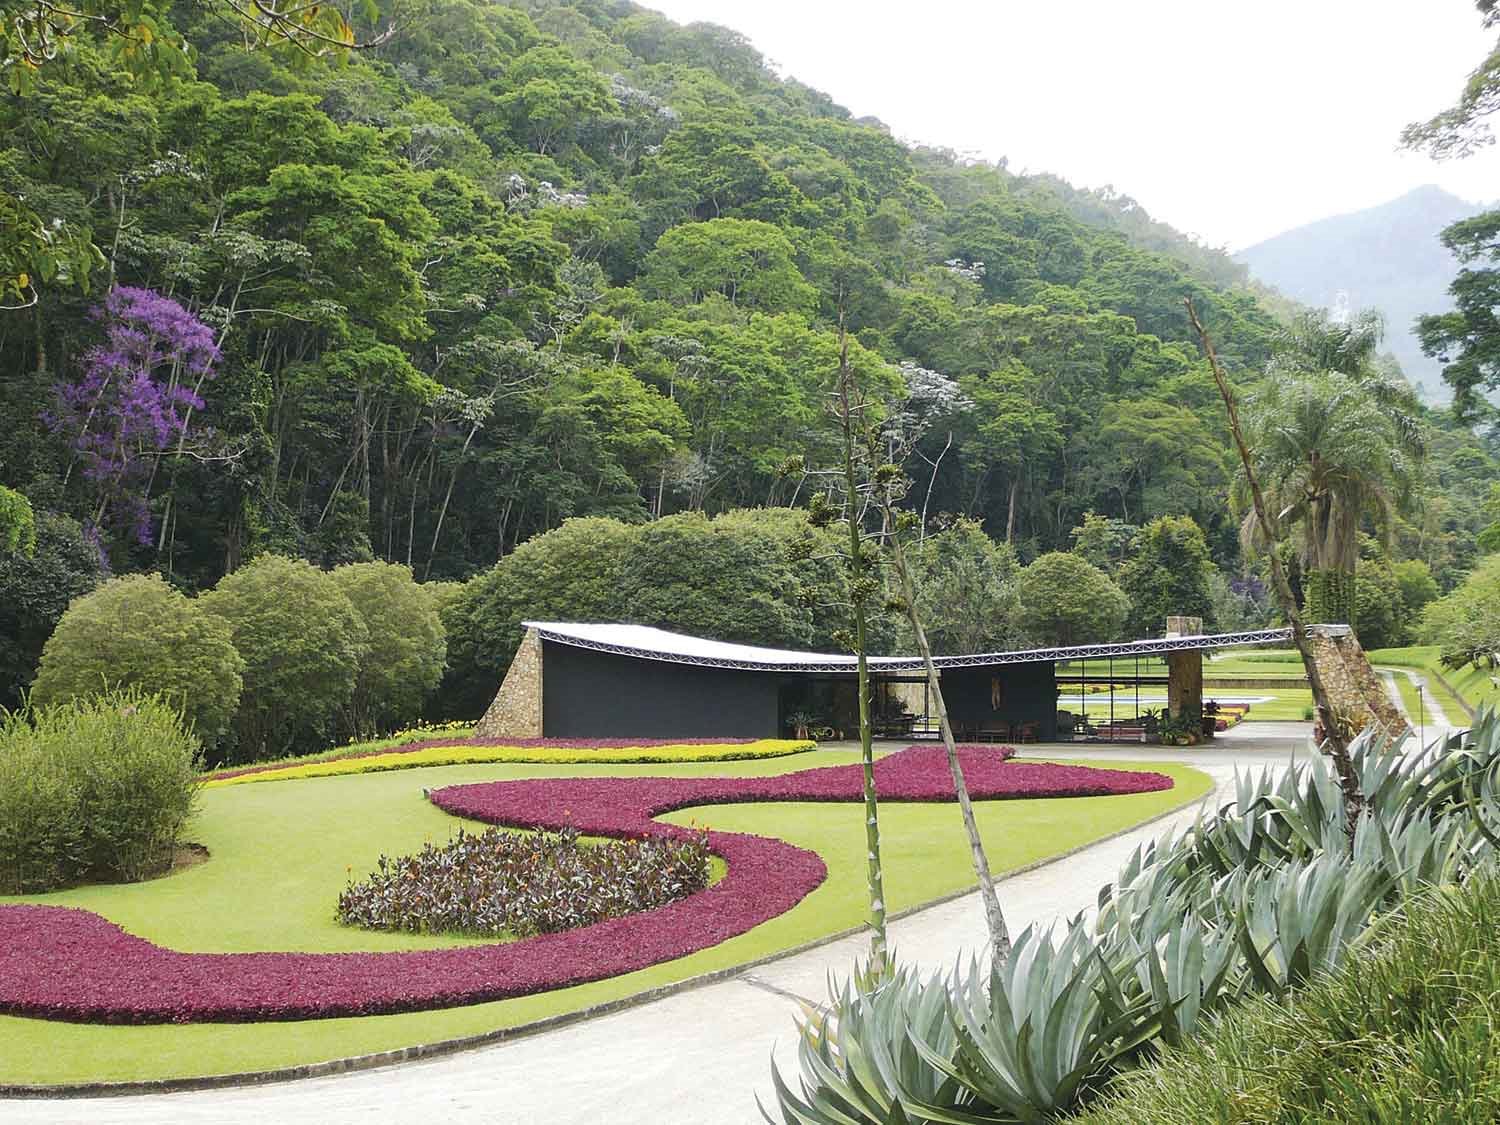 Casa Cavanelas de Oscar Niemayer exposición Brazilian Modern: The Living Art of Roberto Burle Marx en el New York Botanical Garden